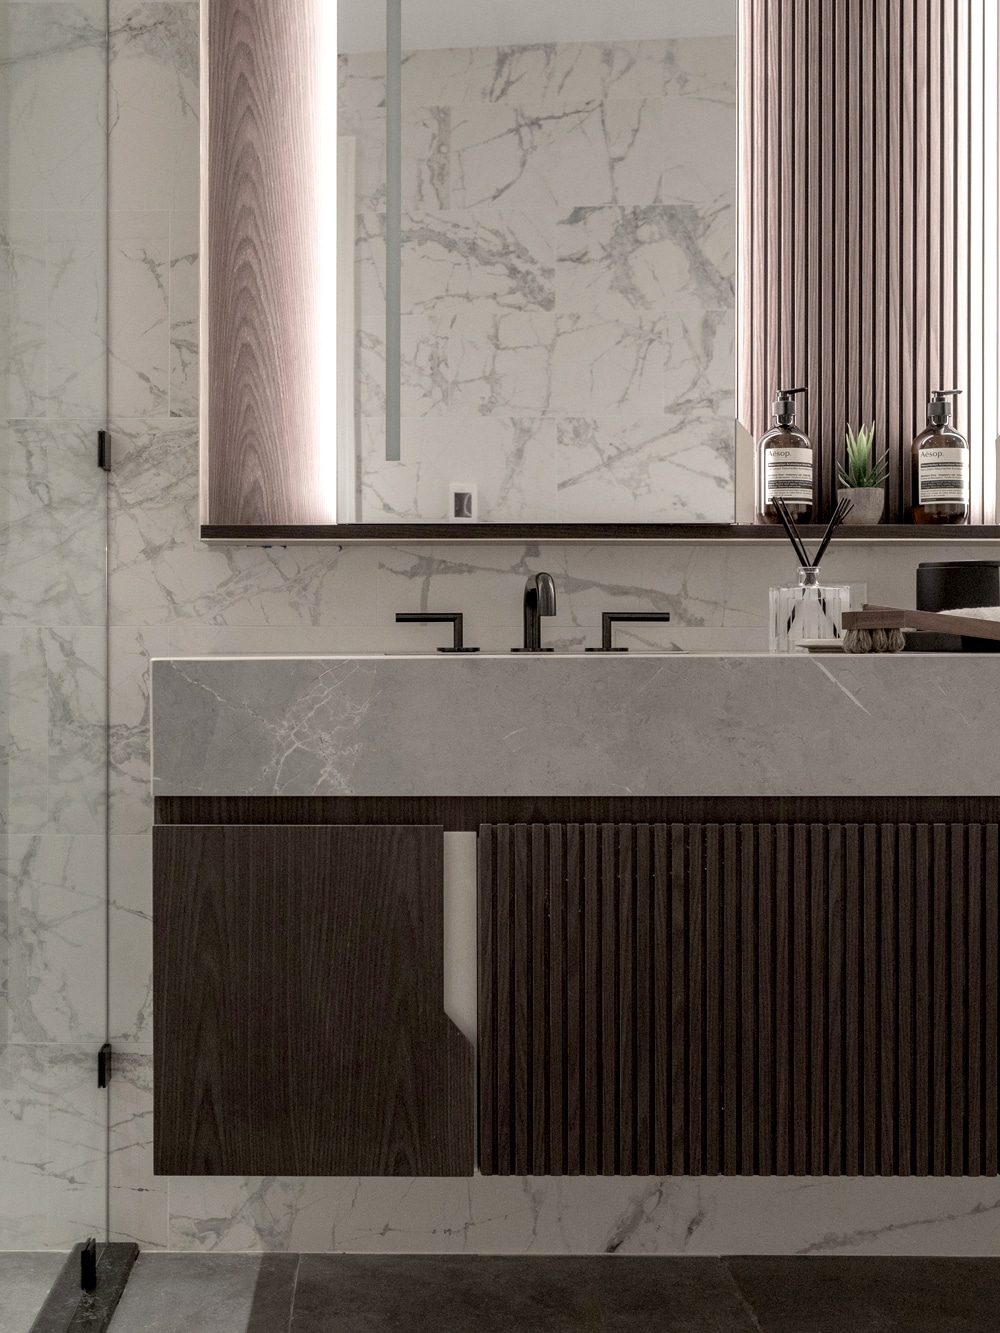 agencement-et-design-salle-de-bain-en-marbre-blanc-avec-mobilier-bois-et-robinetterie-haut-de-gamme-agence-rosedesign-biarritz